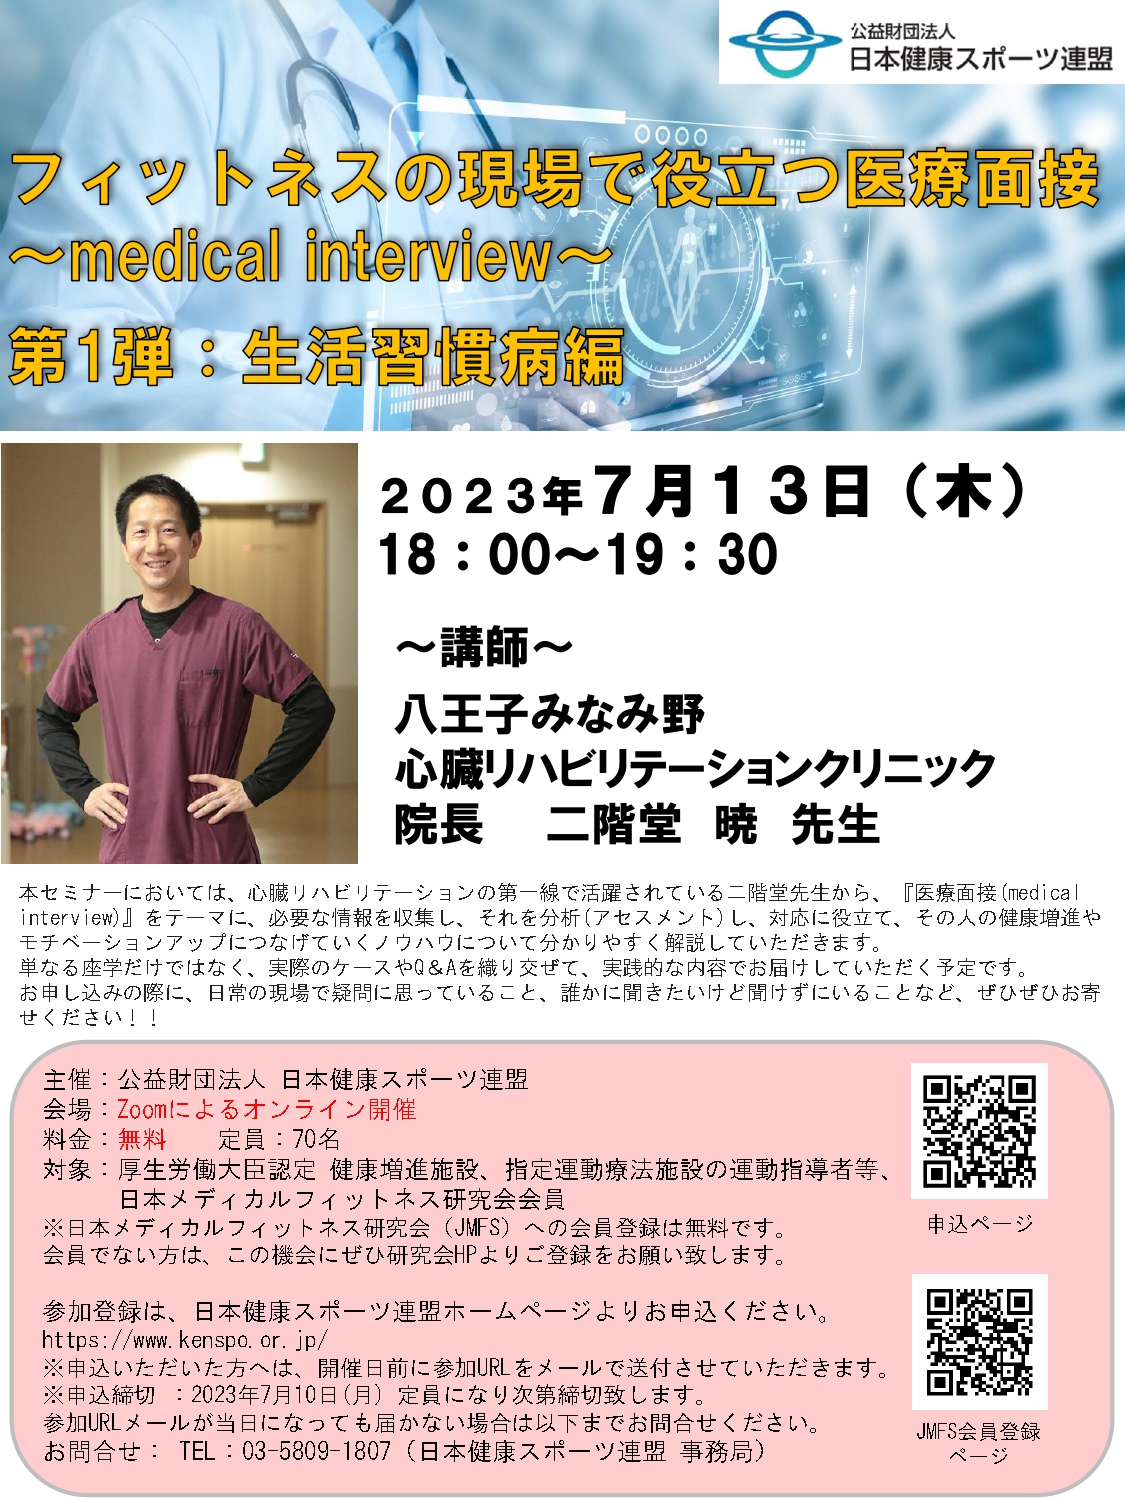 7/13（木）Webセミナー「フィットネスの現場で役立つ医療面接～medical interview～」を開催致します。お申込はこちら！！